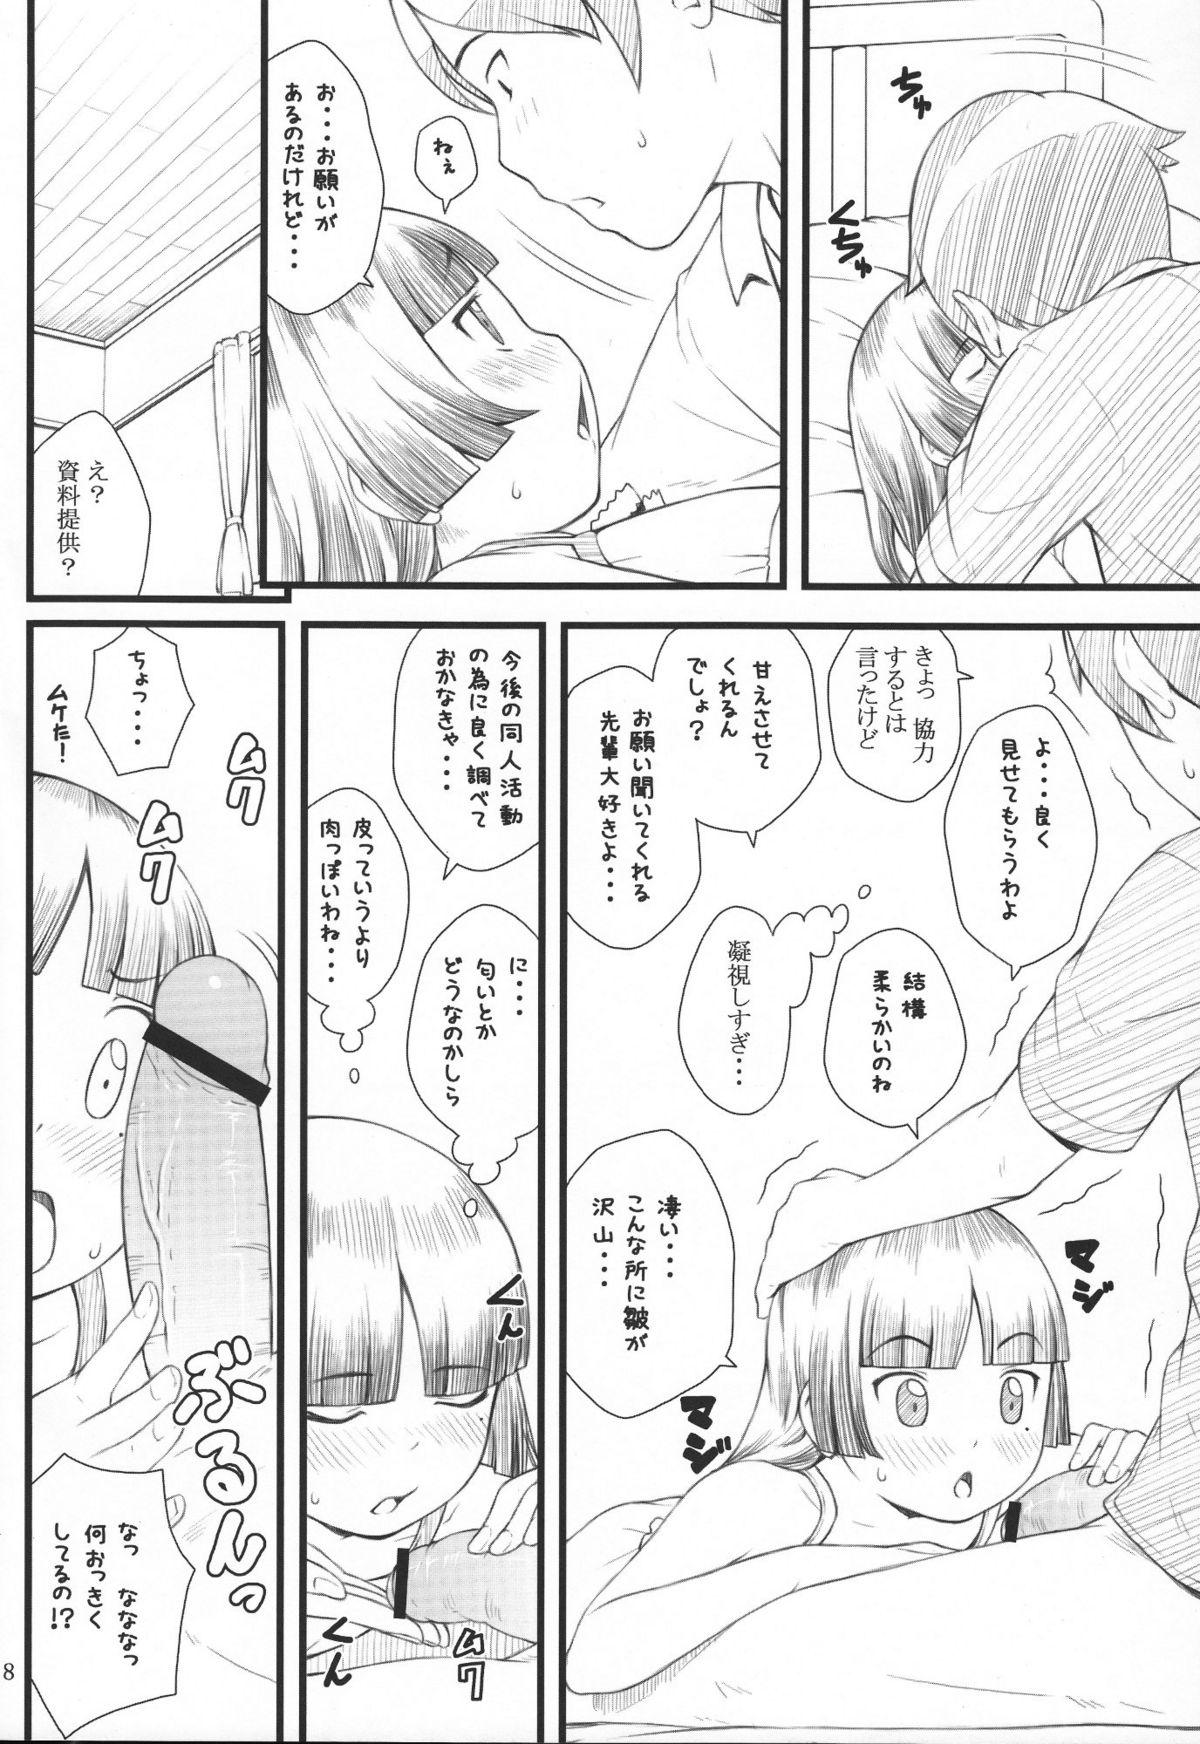 Hot Cunt Kuroneko+Shiro=Pink - Ore no imouto ga konna ni kawaii wake ga nai Couch - Page 7